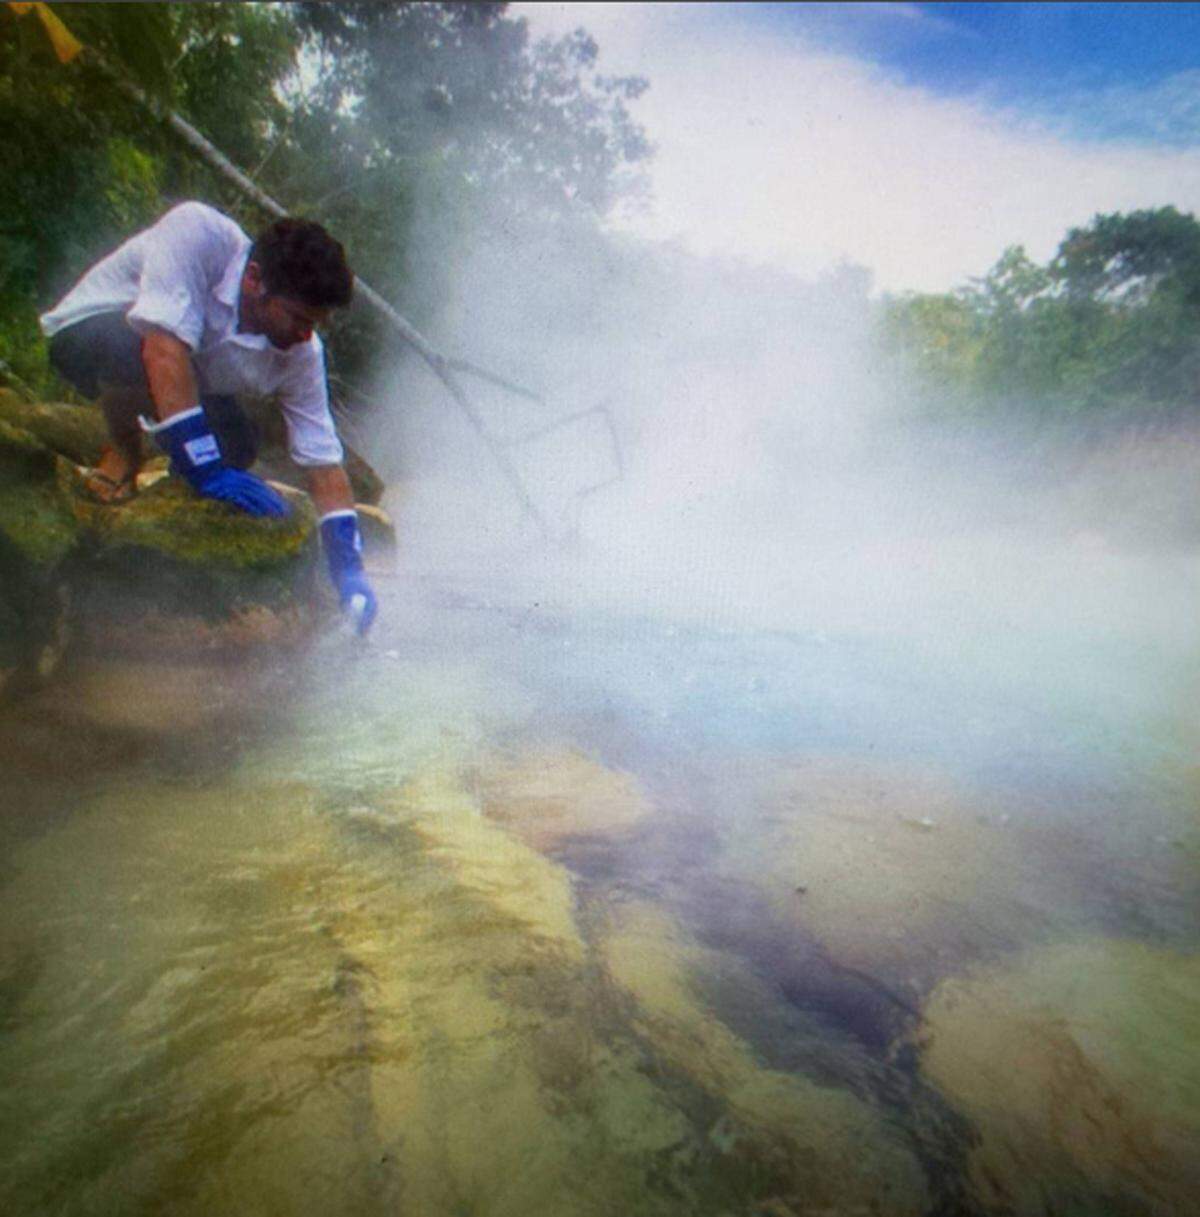 Erst vor wenigen Tagen hat der peruanische Geowissenschaftler Andrés Ruzo Details zum Fluss, der kocht, bekannt gegeben. Der sechs Kilometer lange Strom ist unterschiedlich heiß, hat aber eine durchschnittliche Temperatur von 86 Grad Celsius. Anscheinend ist das Wasser meteorischen Ursprungs und ist als Regen auf die Erde gekommen. Mehr Informationen wird der Wissenschaftler erst veröffentlichen, wenn die peruanische Regierung zustimmt, den Fluss zu schützen.